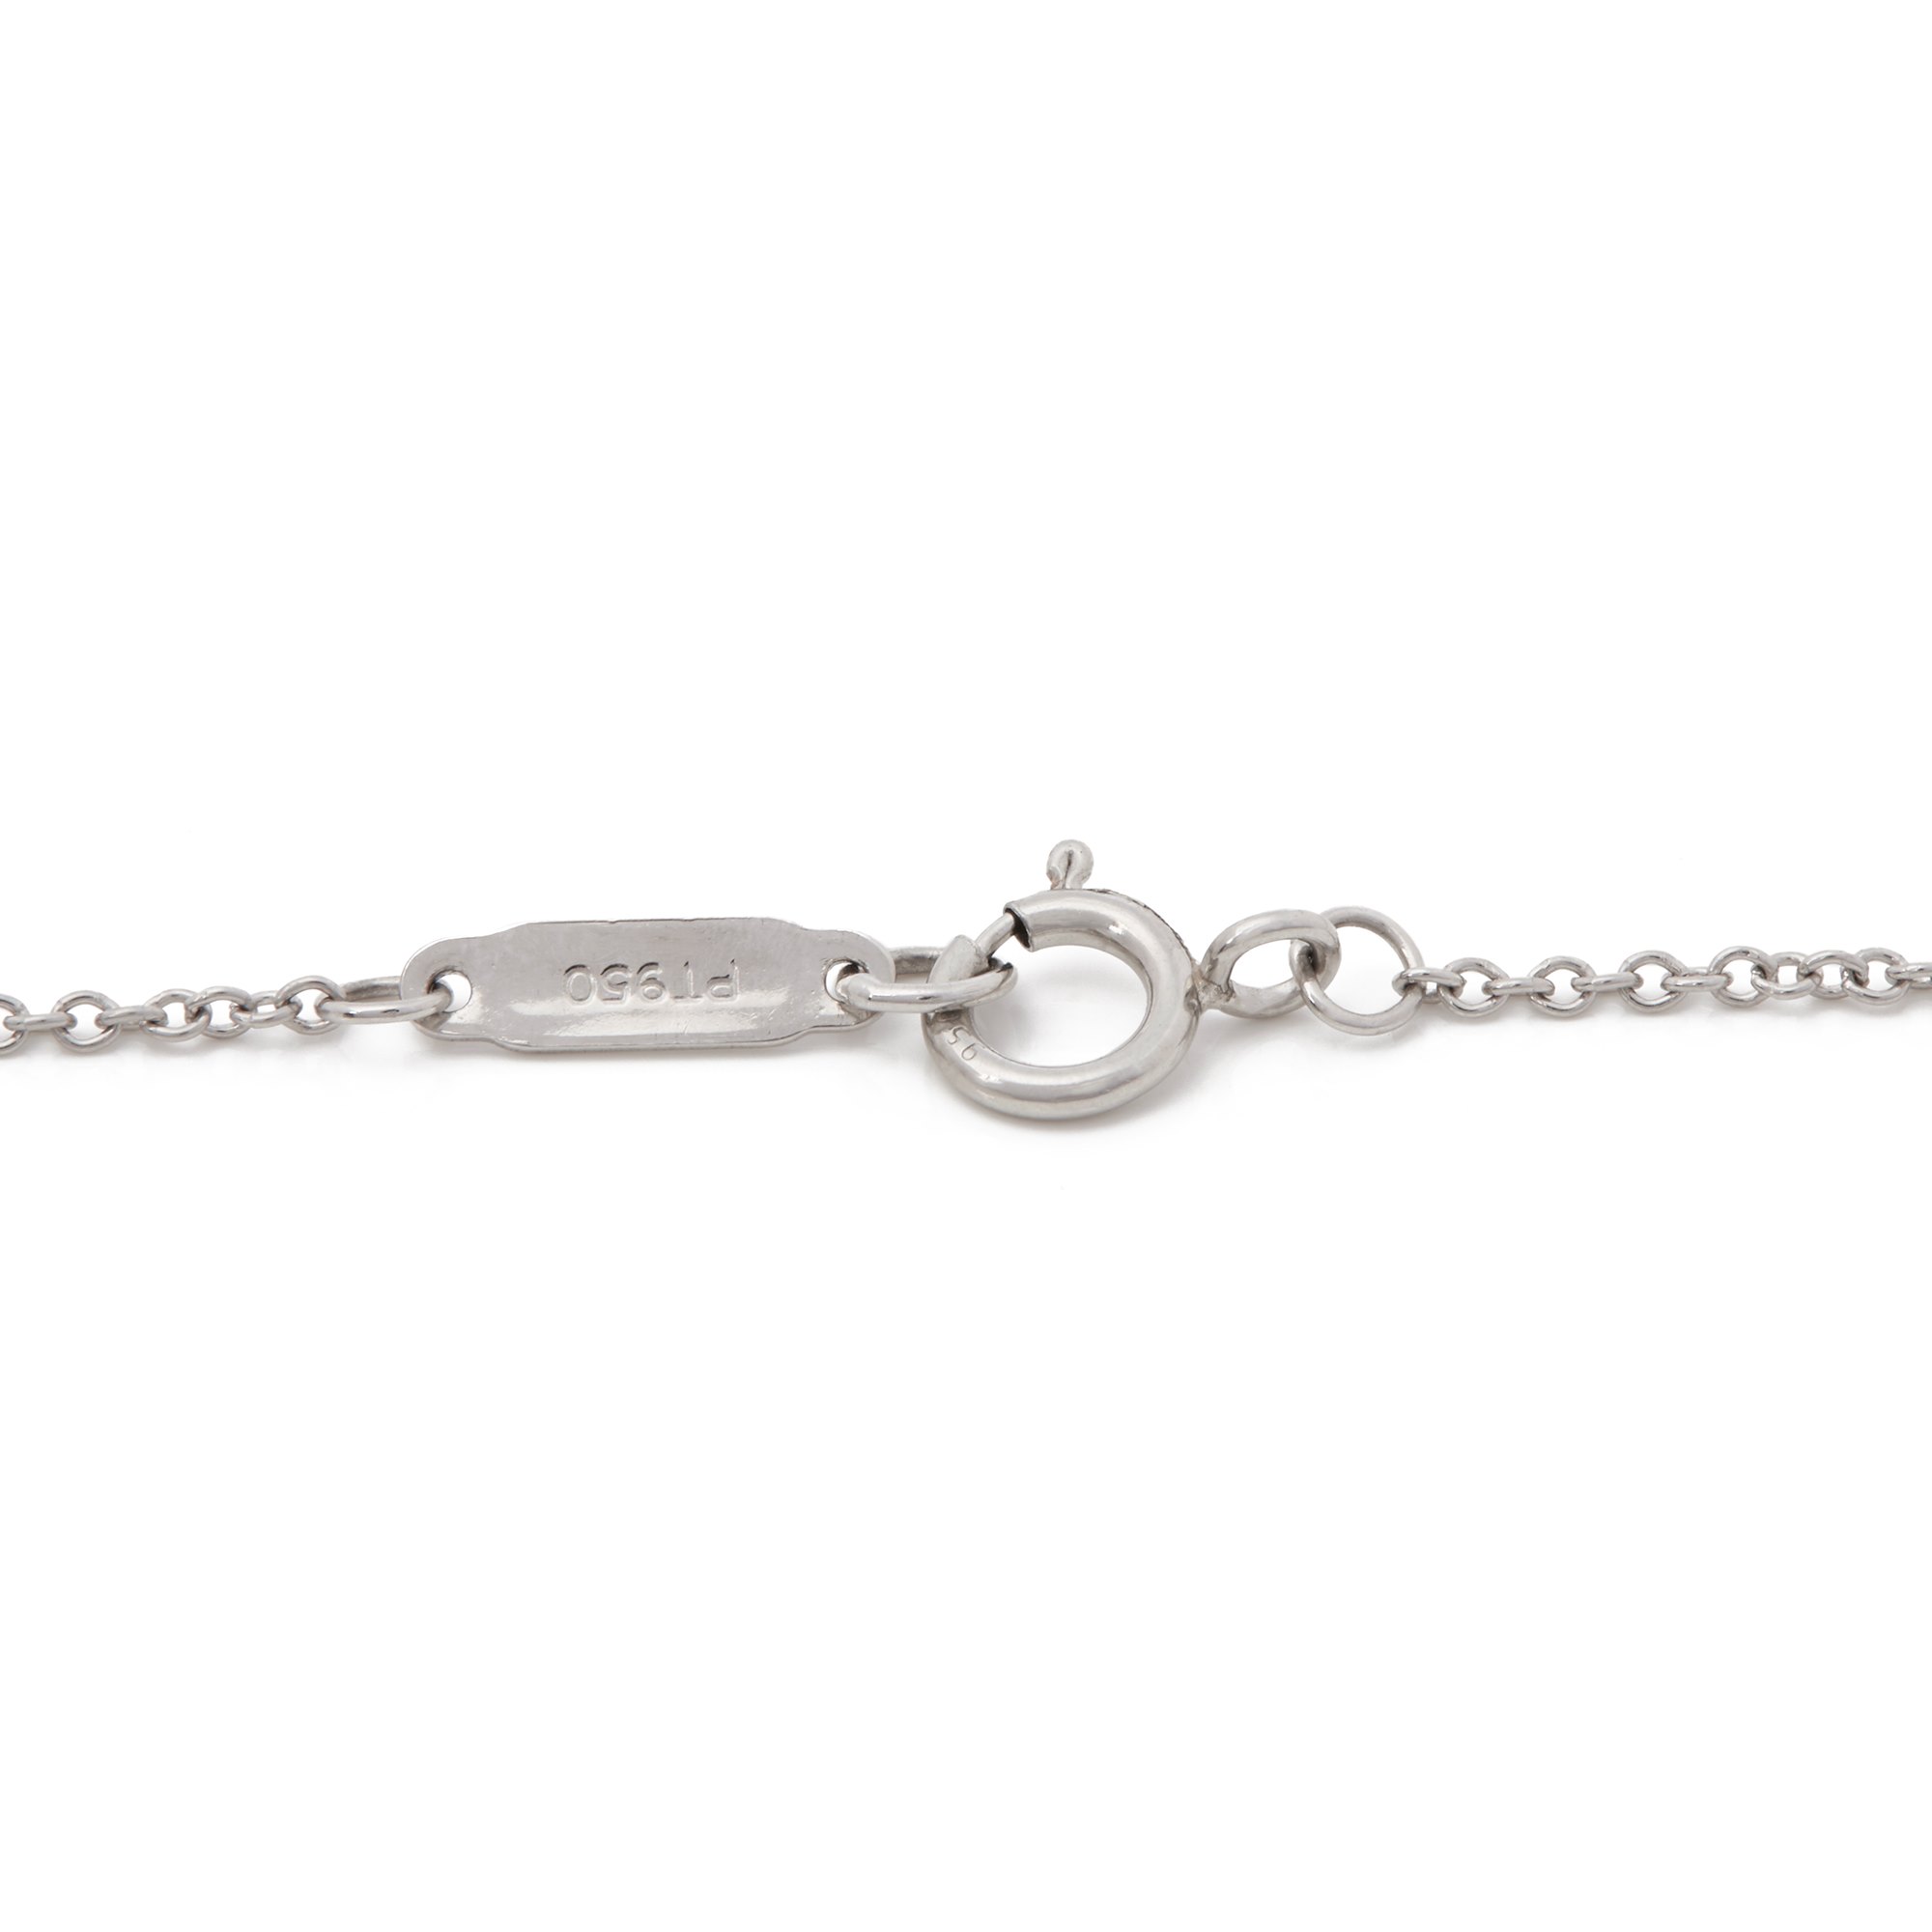 Tiffany & Co. Platinum Diamond Heart Tiffany Key Pendant Necklace